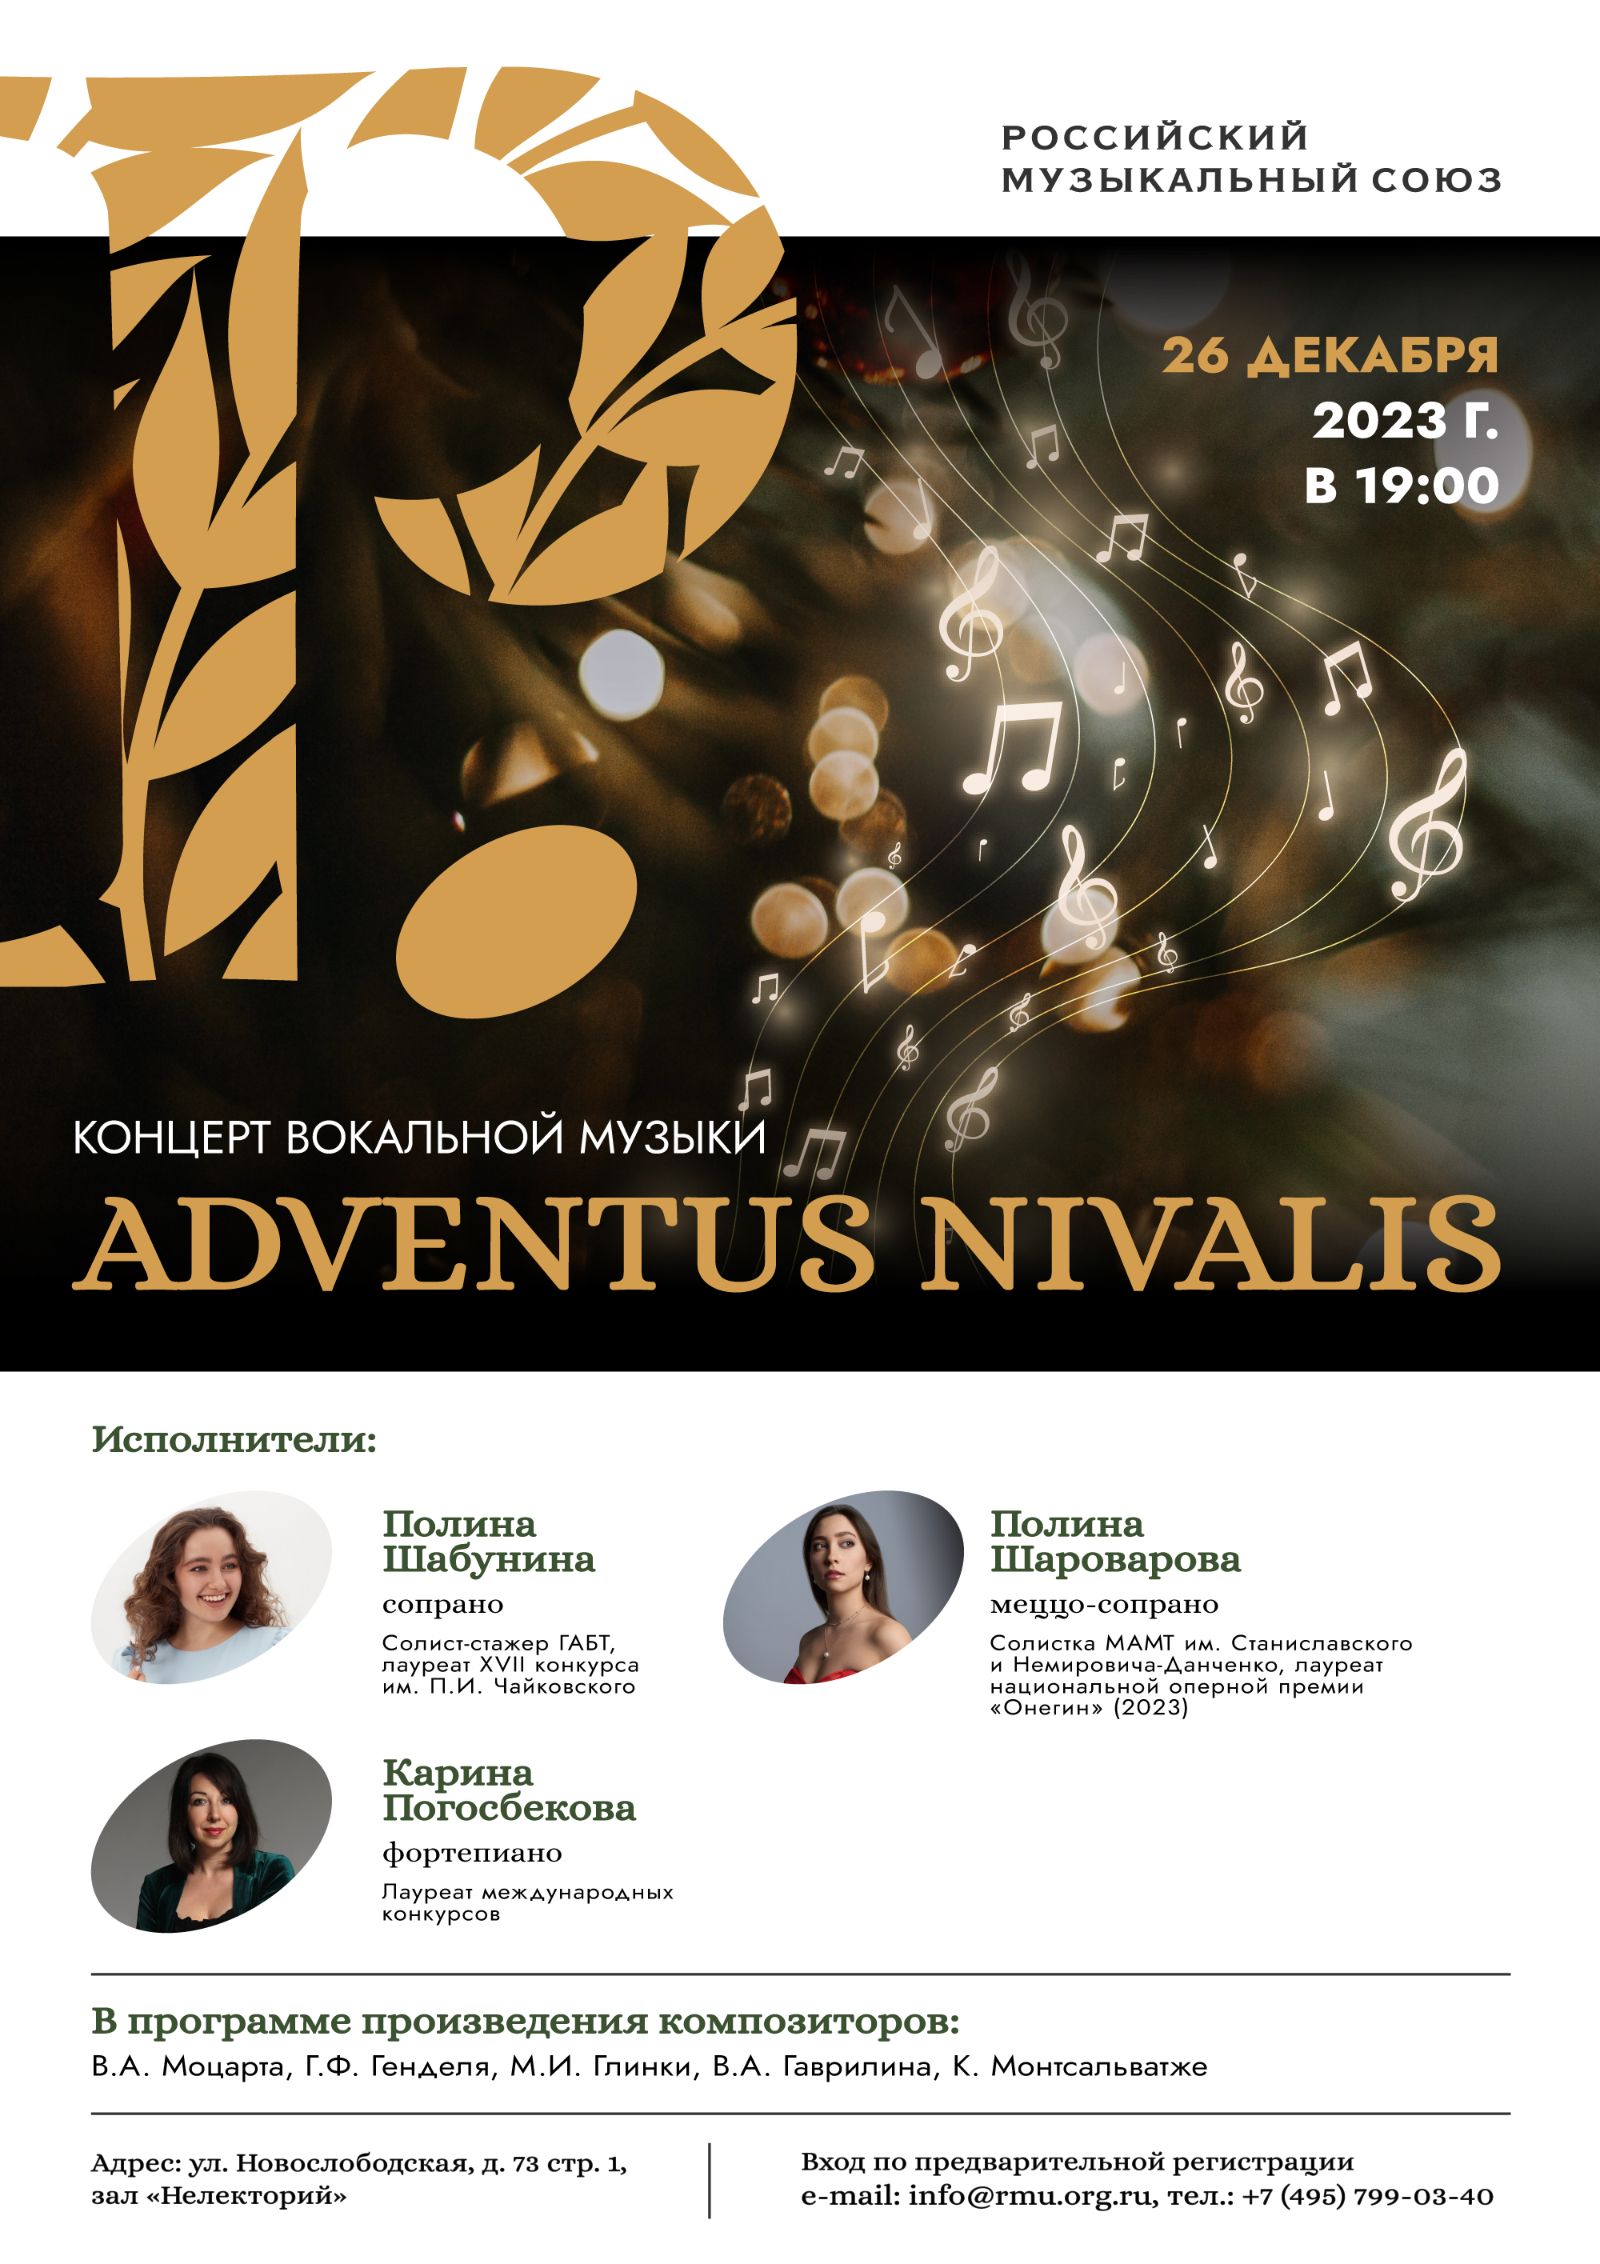 РМС приглашает слушателей на предновогодний концерт вокальной музыки Adventus Nivalis